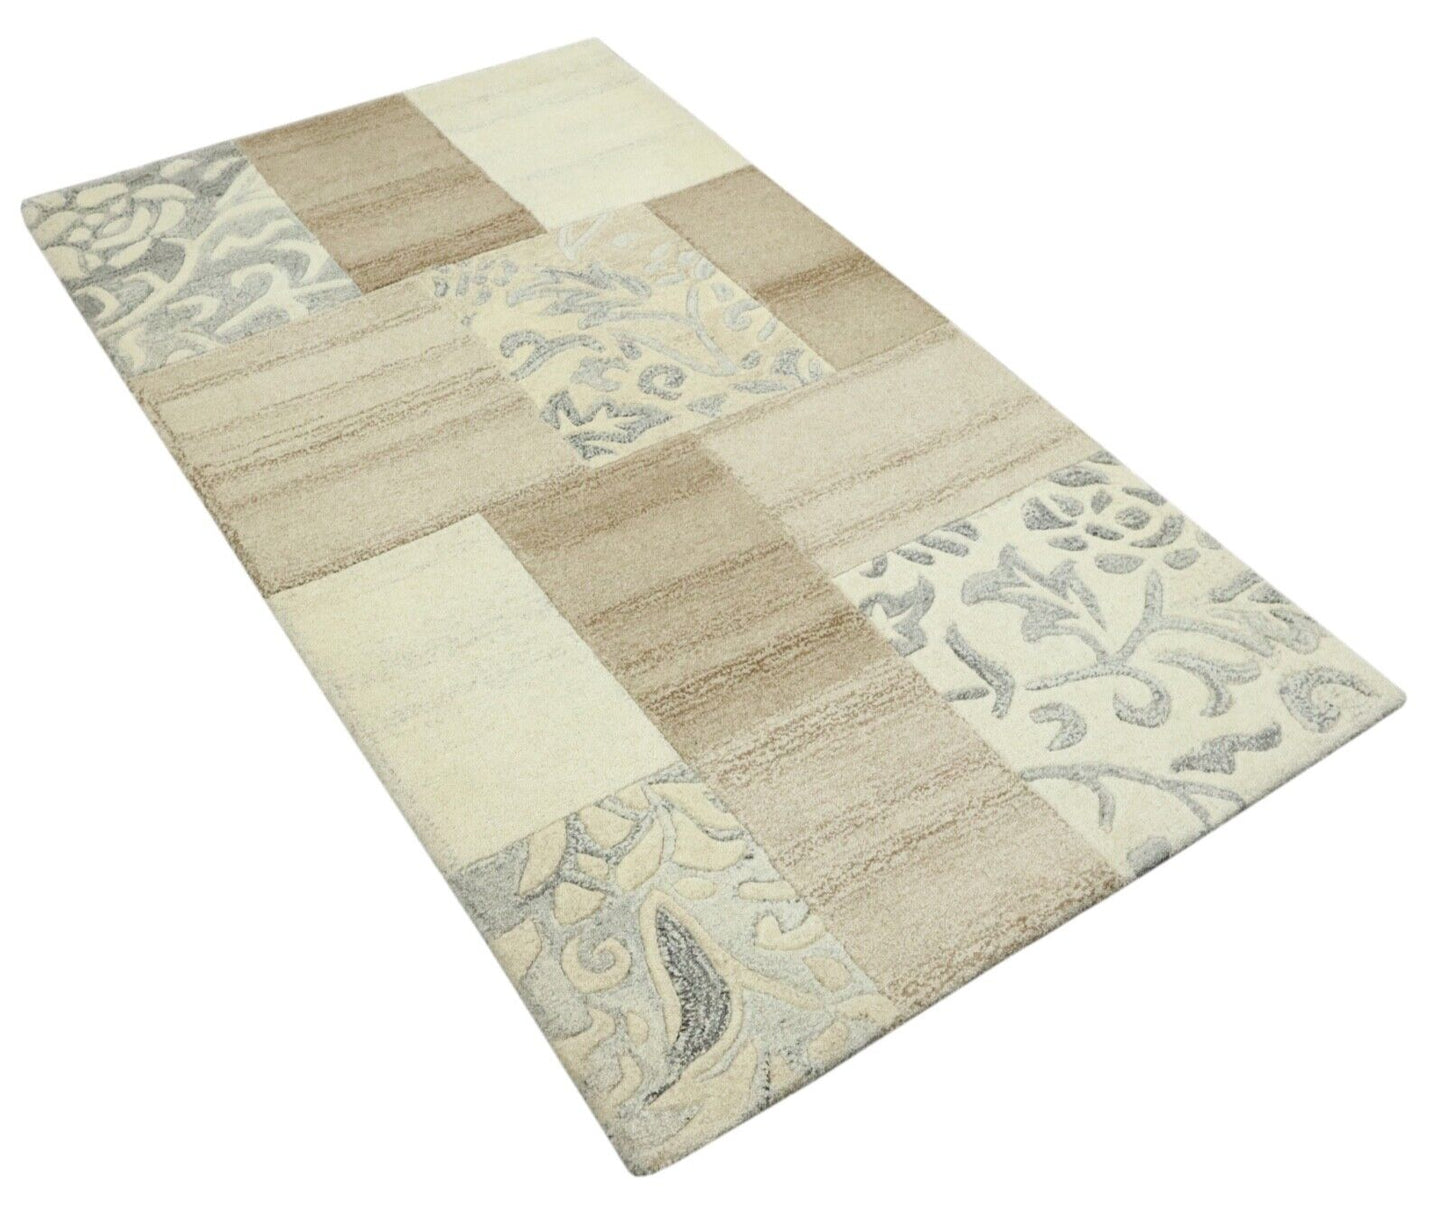 Beige Grau Orient Teppich 100% Wolle 90X160 cm Handarbeit Handgetuftet T976